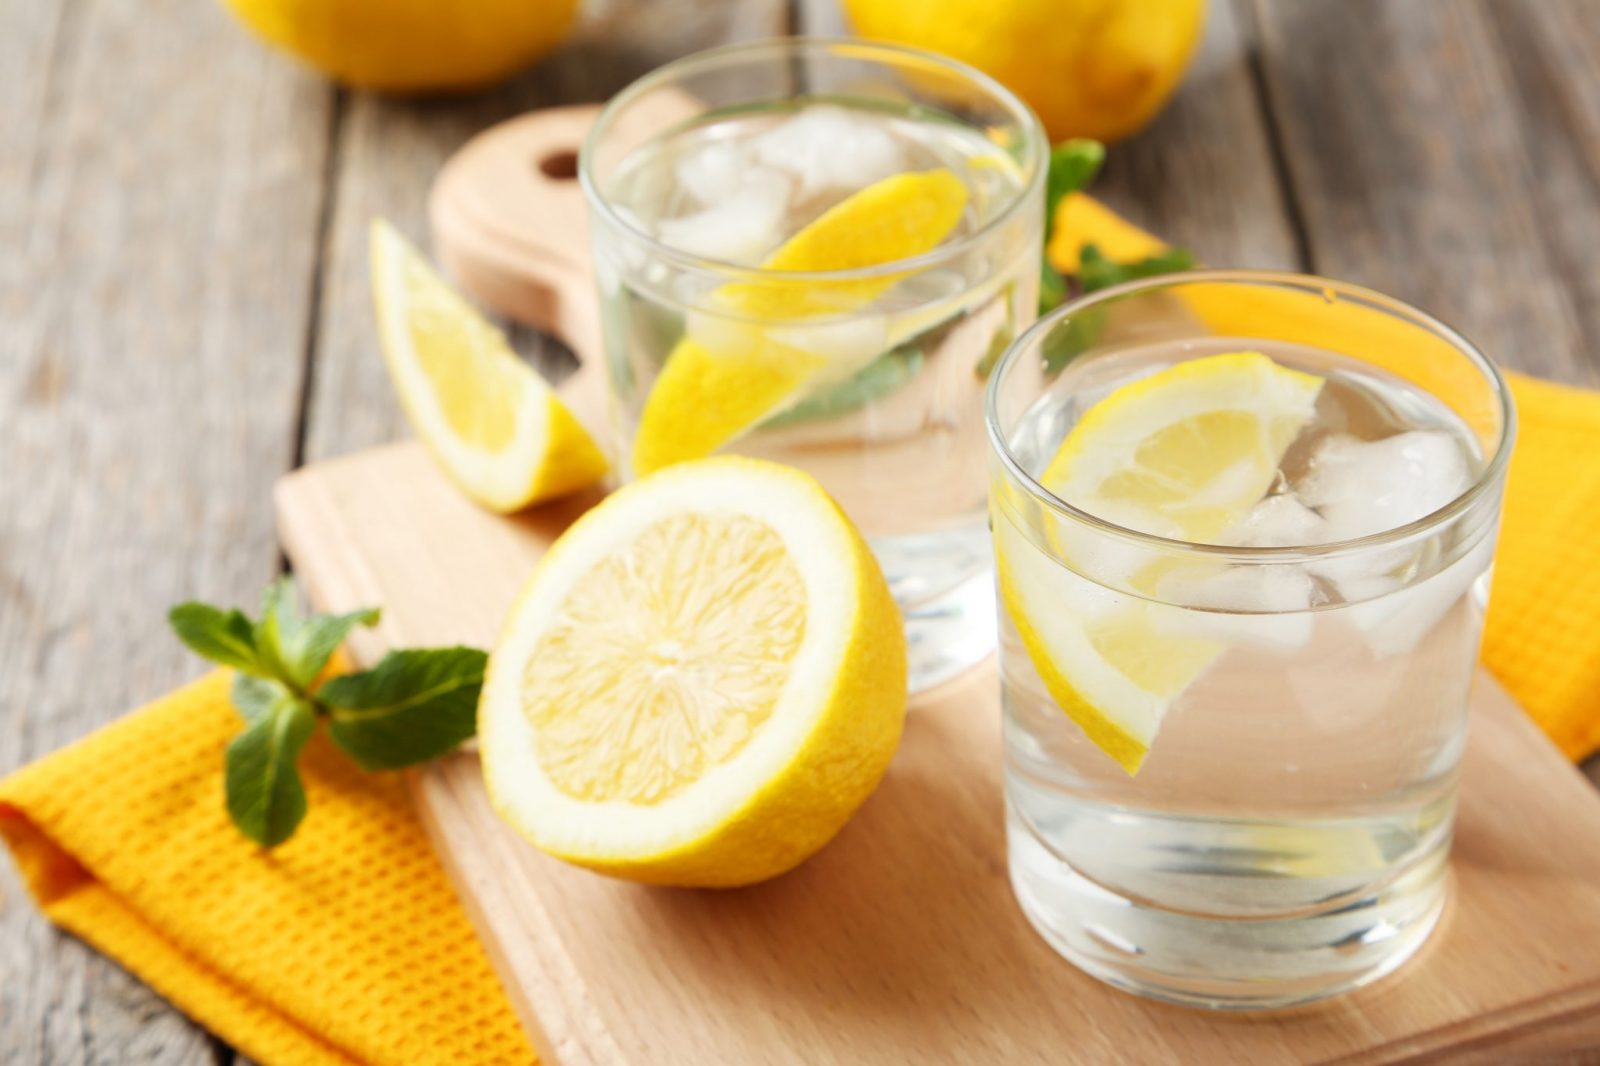 limonlu su içmenin faydaları